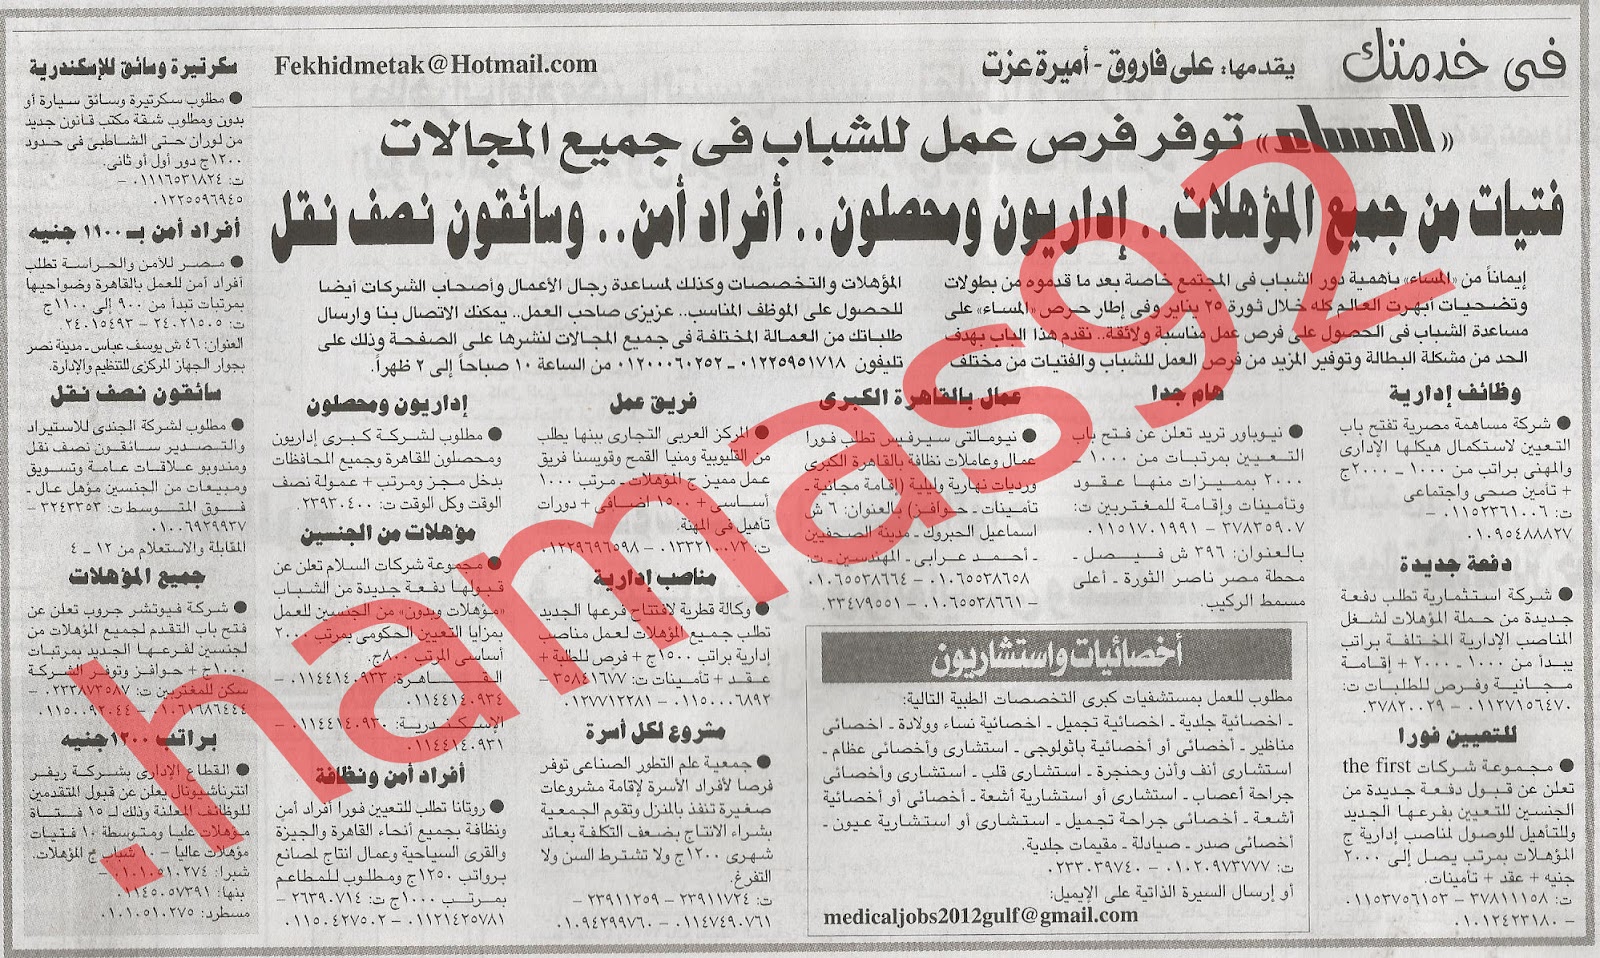 وظائف مصر|اعلانات وظائف جريدة المساء الاثنين 27\8\2012 %D8%A7%D9%84%D9%85%D8%B3%D8%A7%D8%A1